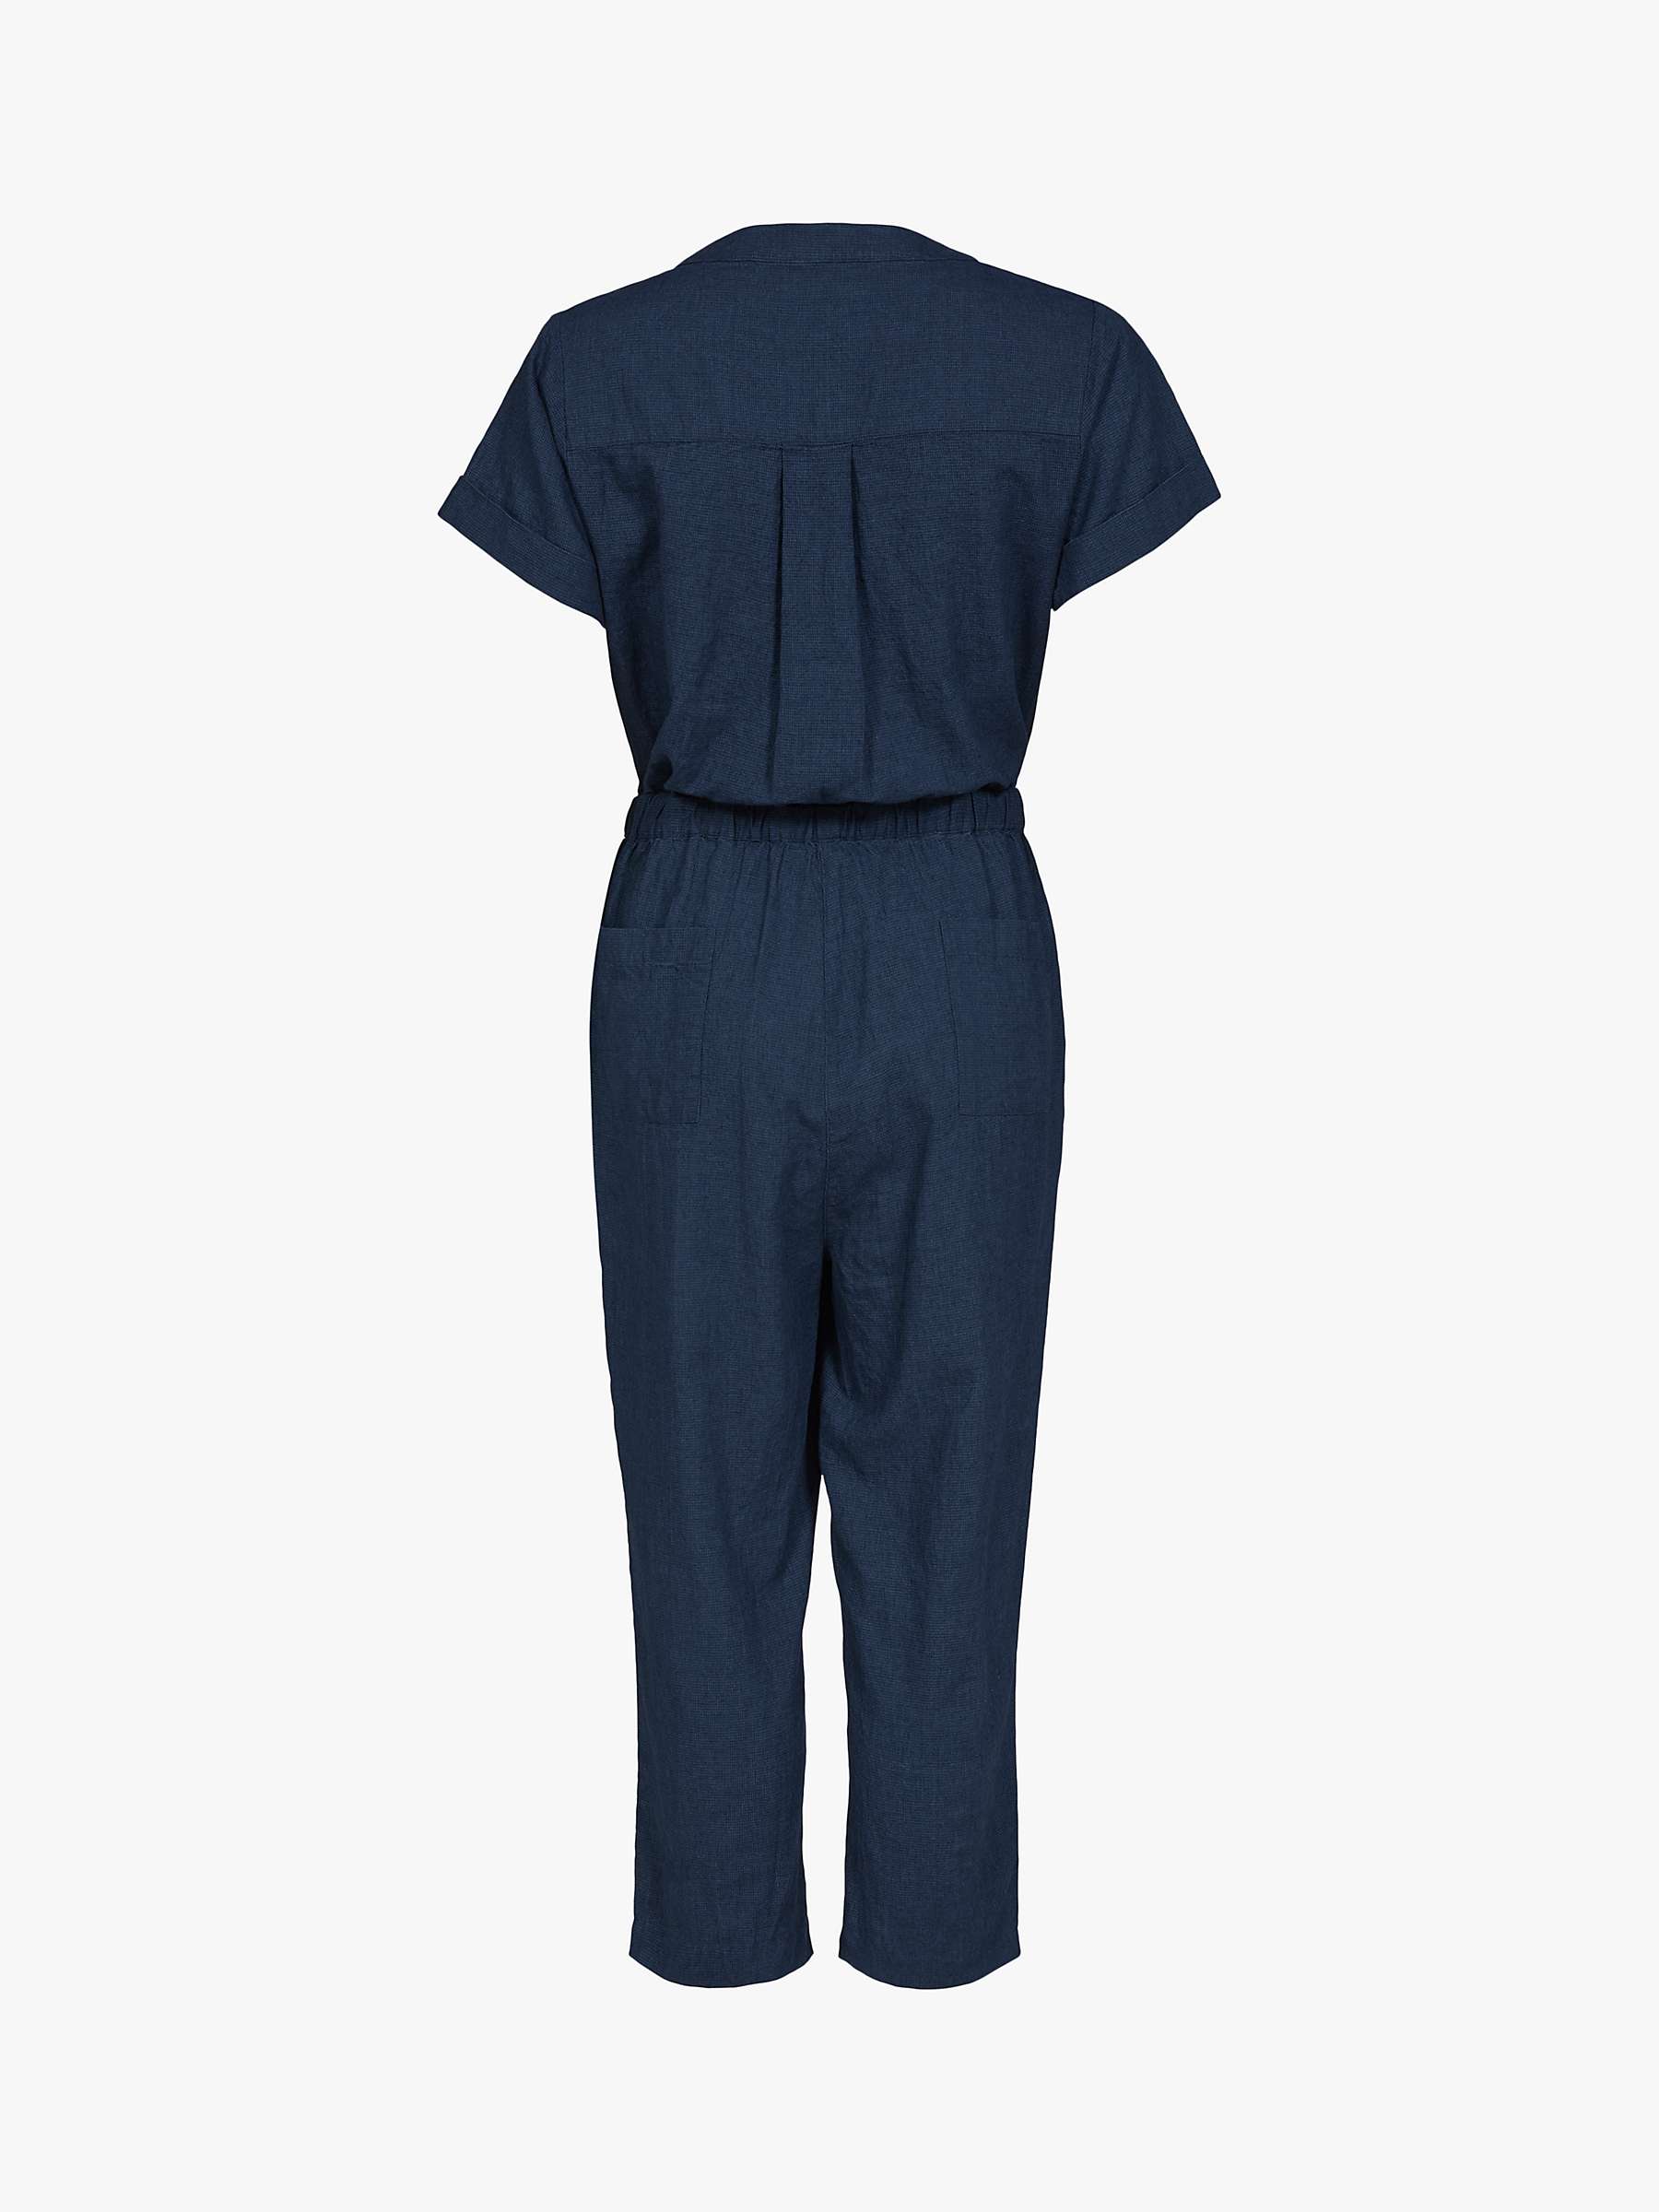 Buy Celtic & Co. Linen Cotton Jumpsuit, Navy Online at johnlewis.com